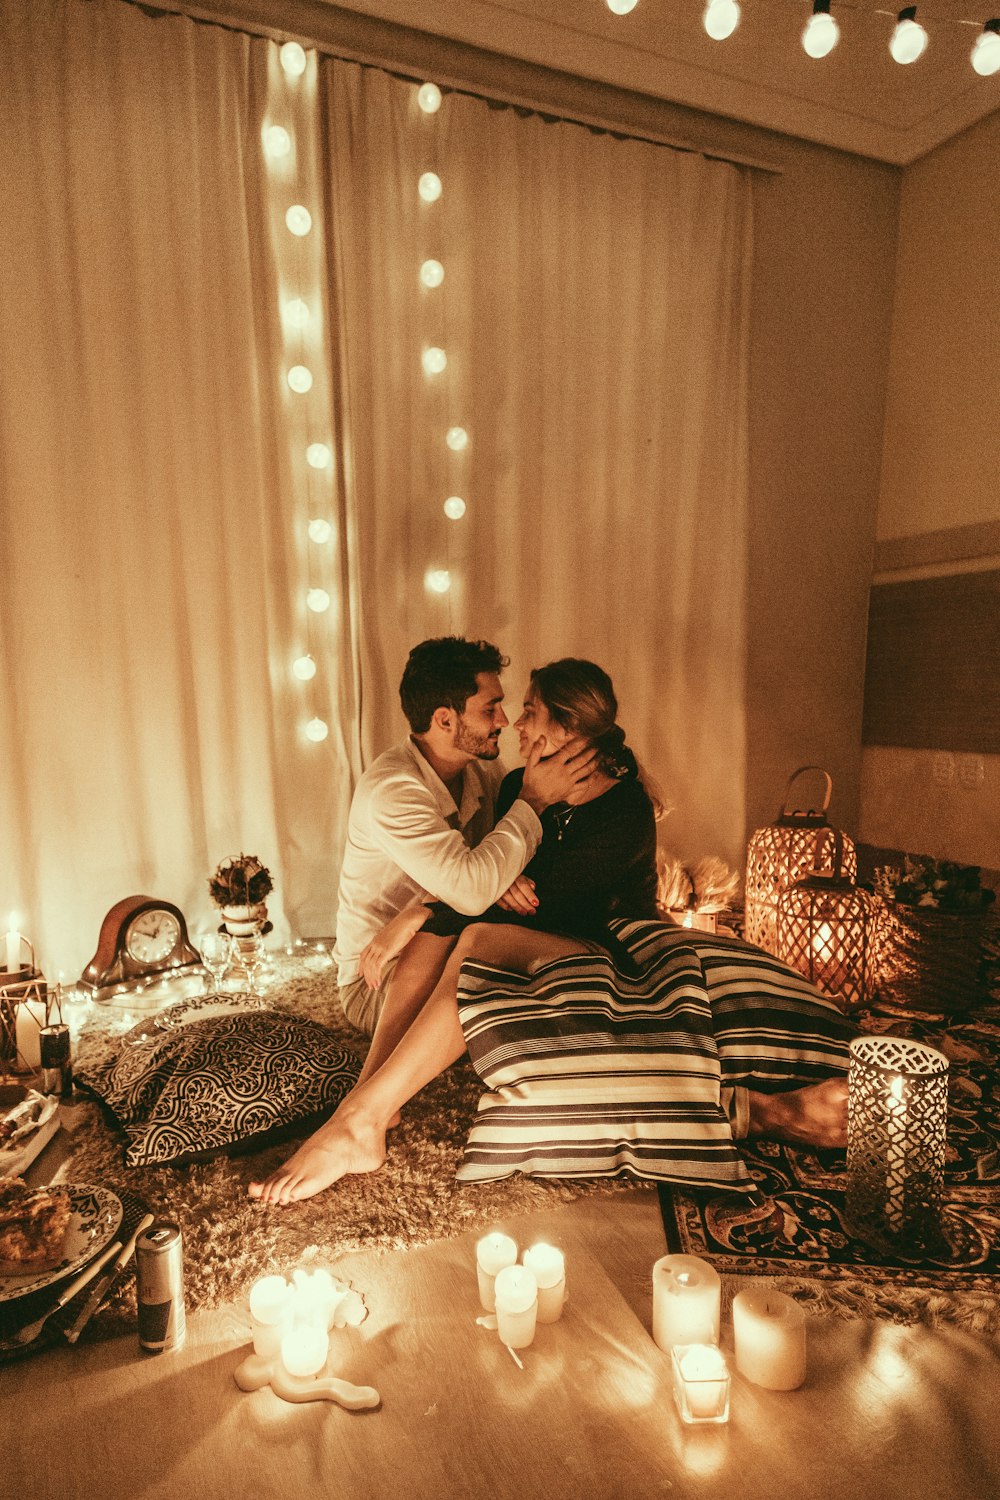 homme et femme assis sur le sol et sur le point de s’embrasser avec des bougies allumées à l’intérieur de la pièce